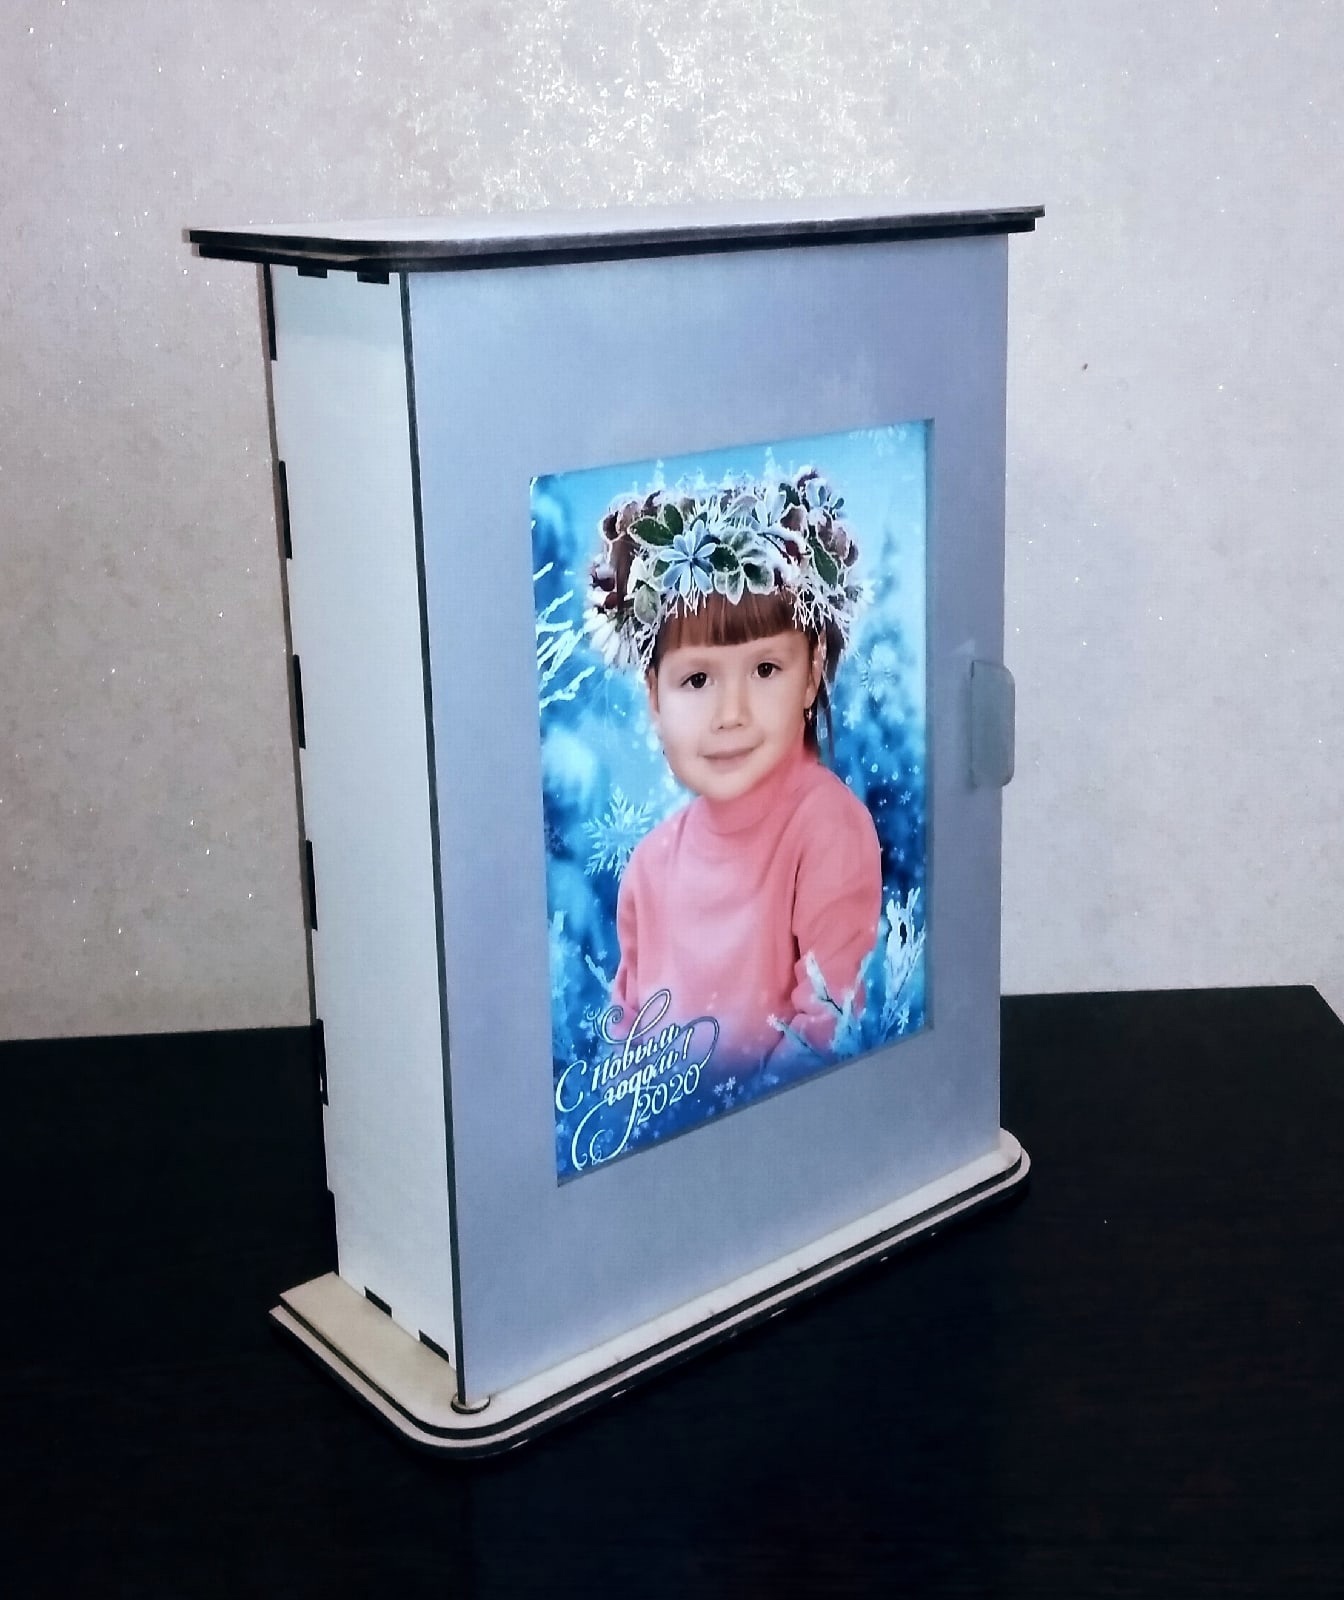 صندوق تخزين مفتاح الخزانة بالليزر المقطوع بالليزر مع إطار الصورة